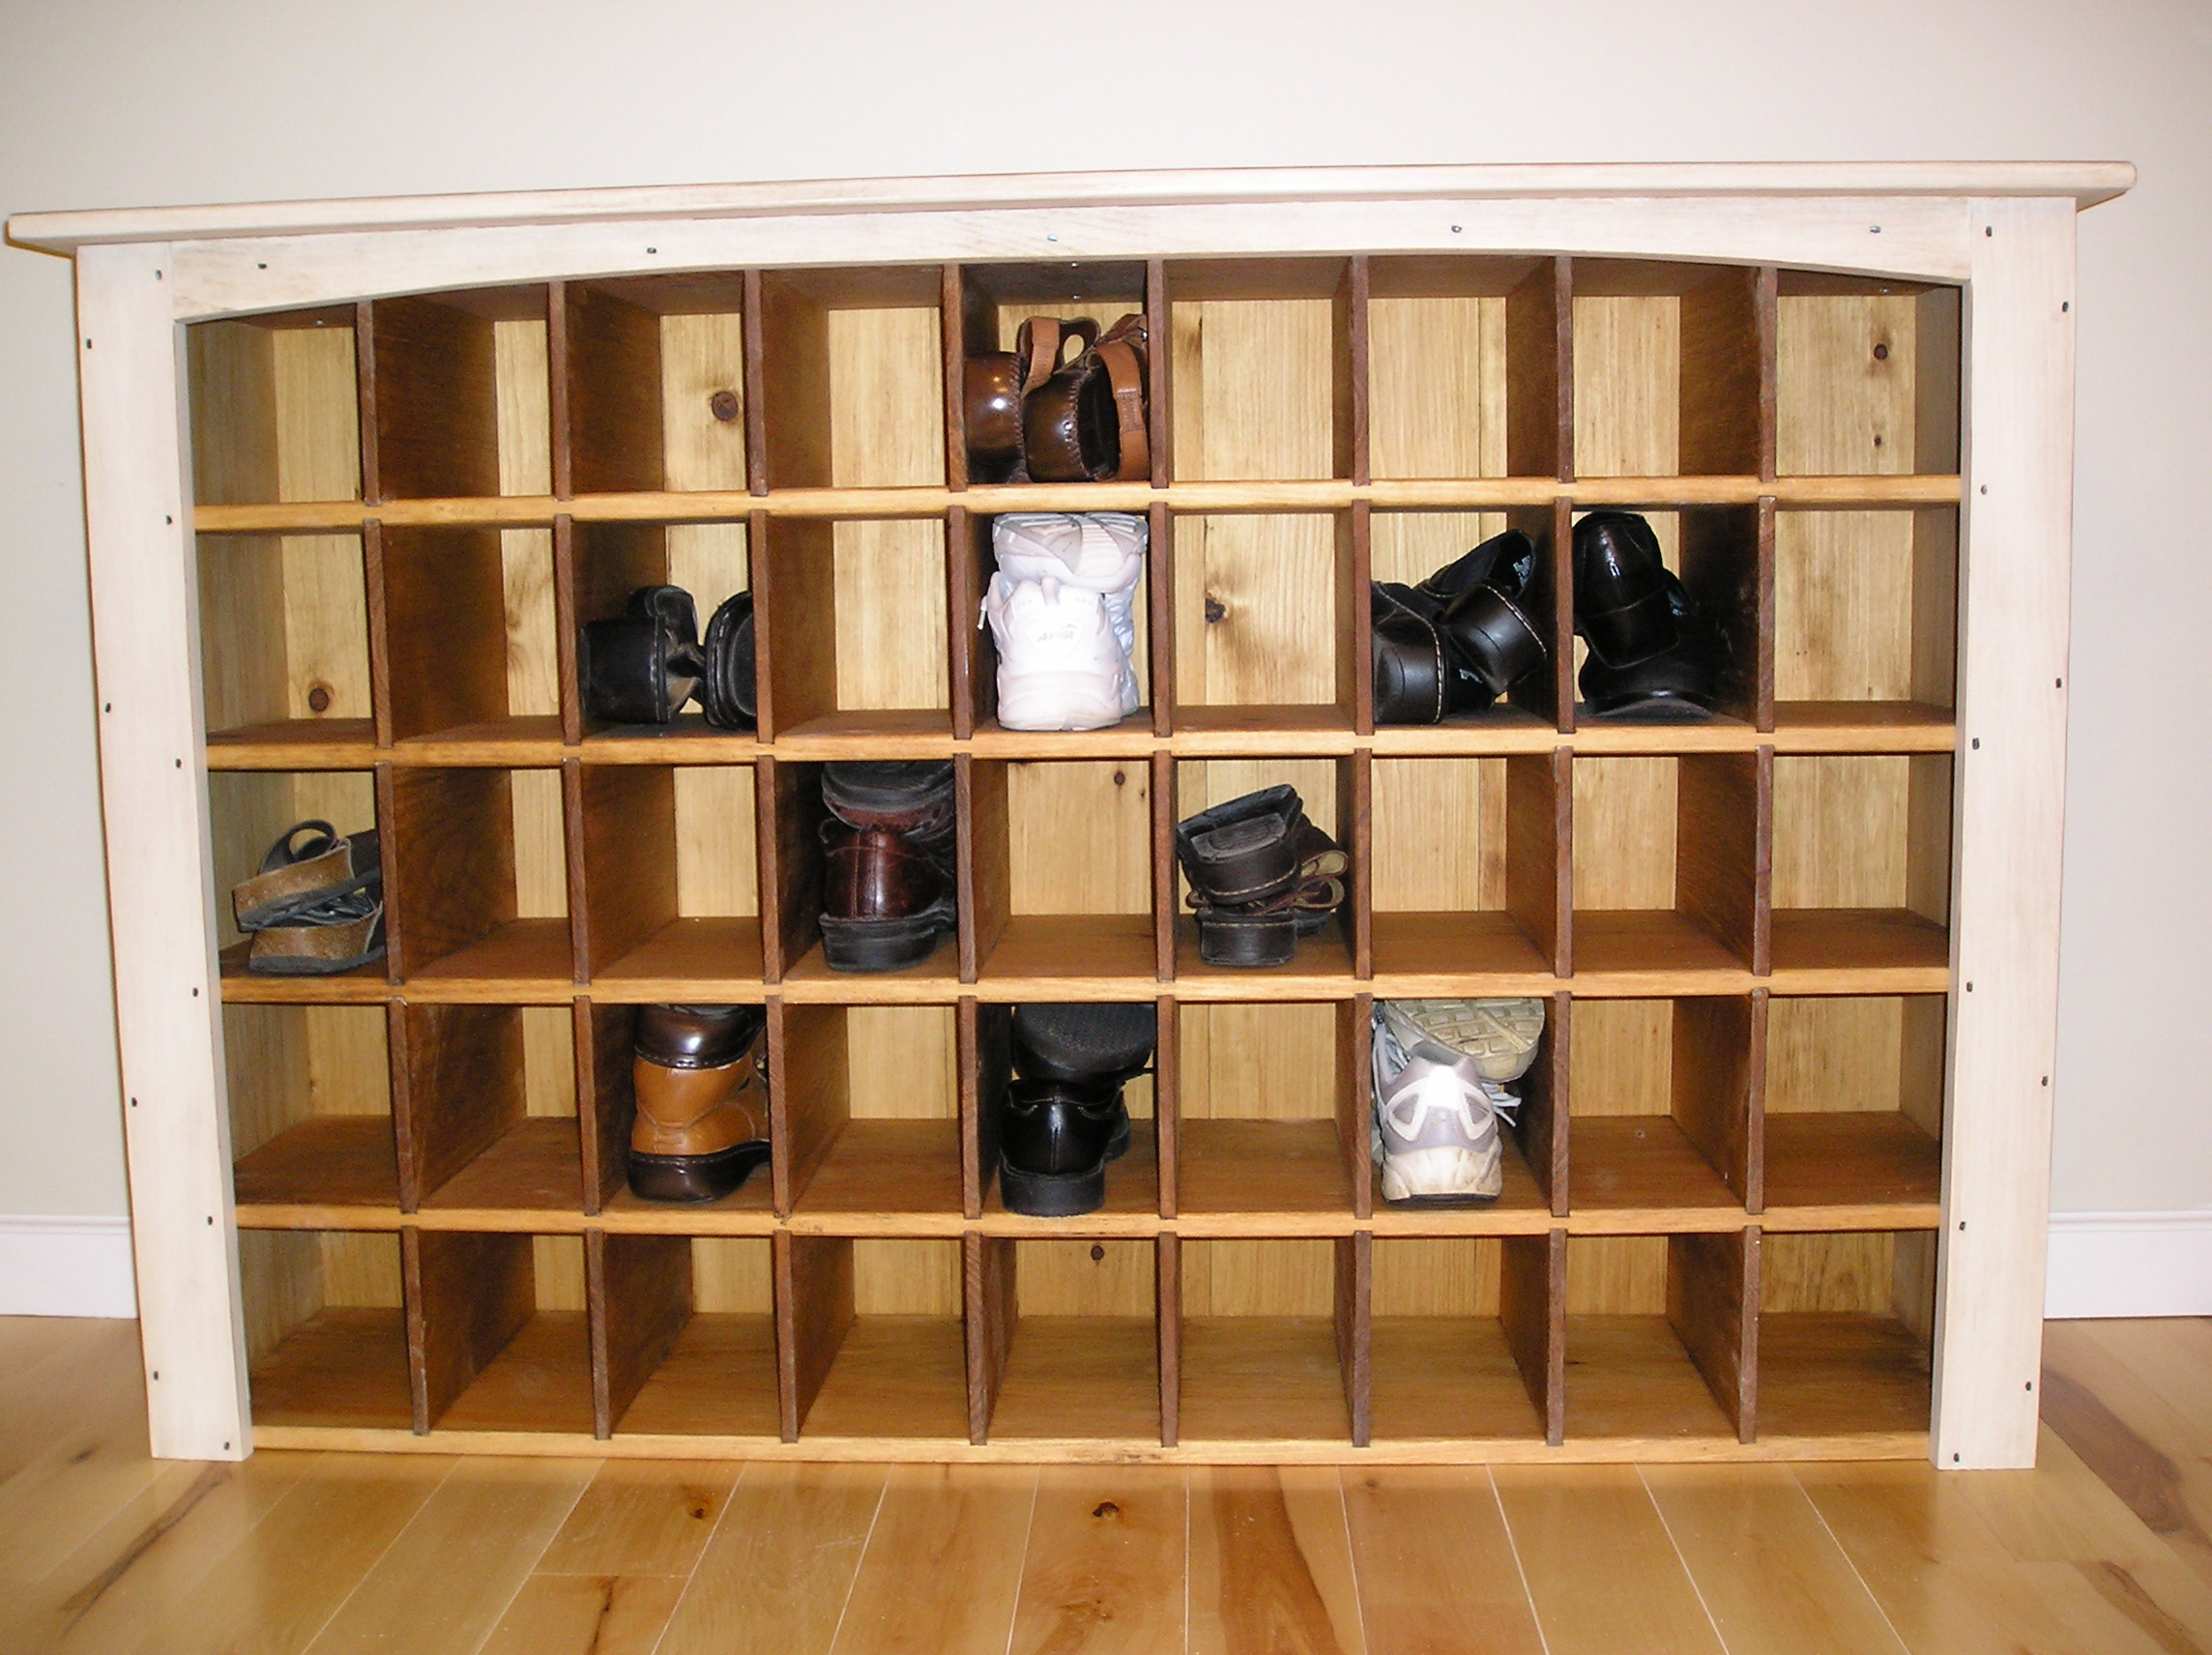 DIY Shoe Rack For Small Closet
 Saving space a shoe closet storage